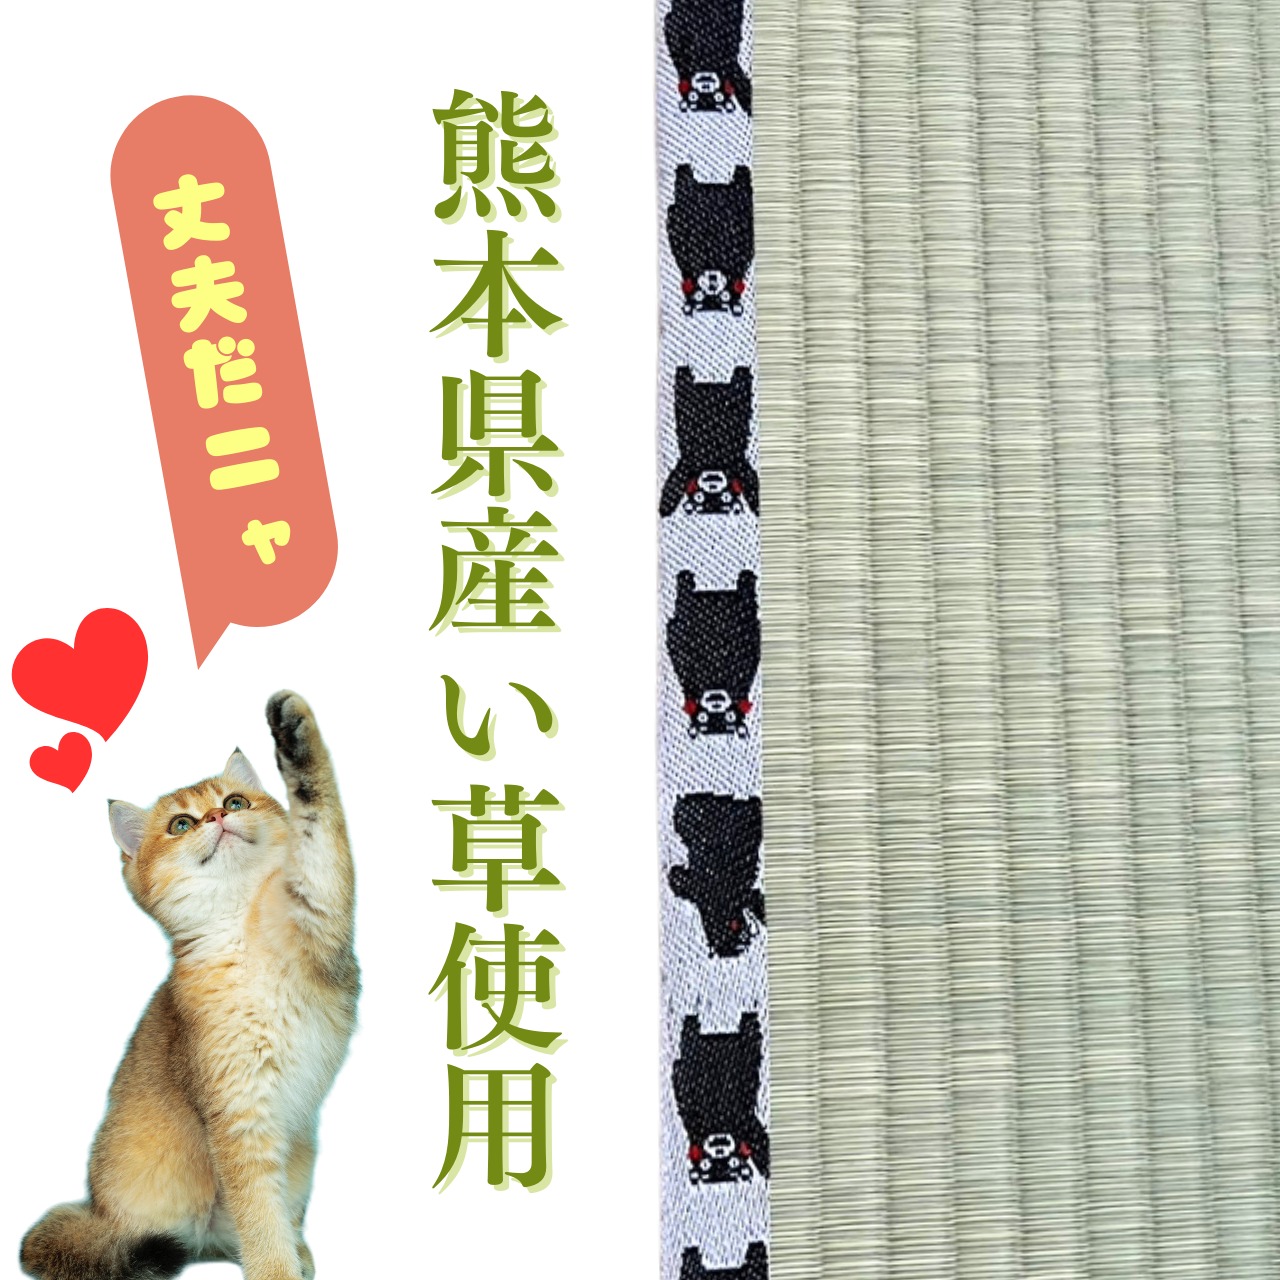 熊本県産高級い草100% お猫様専用ミニ畳3枚セット くまモン柄 | NIHONT